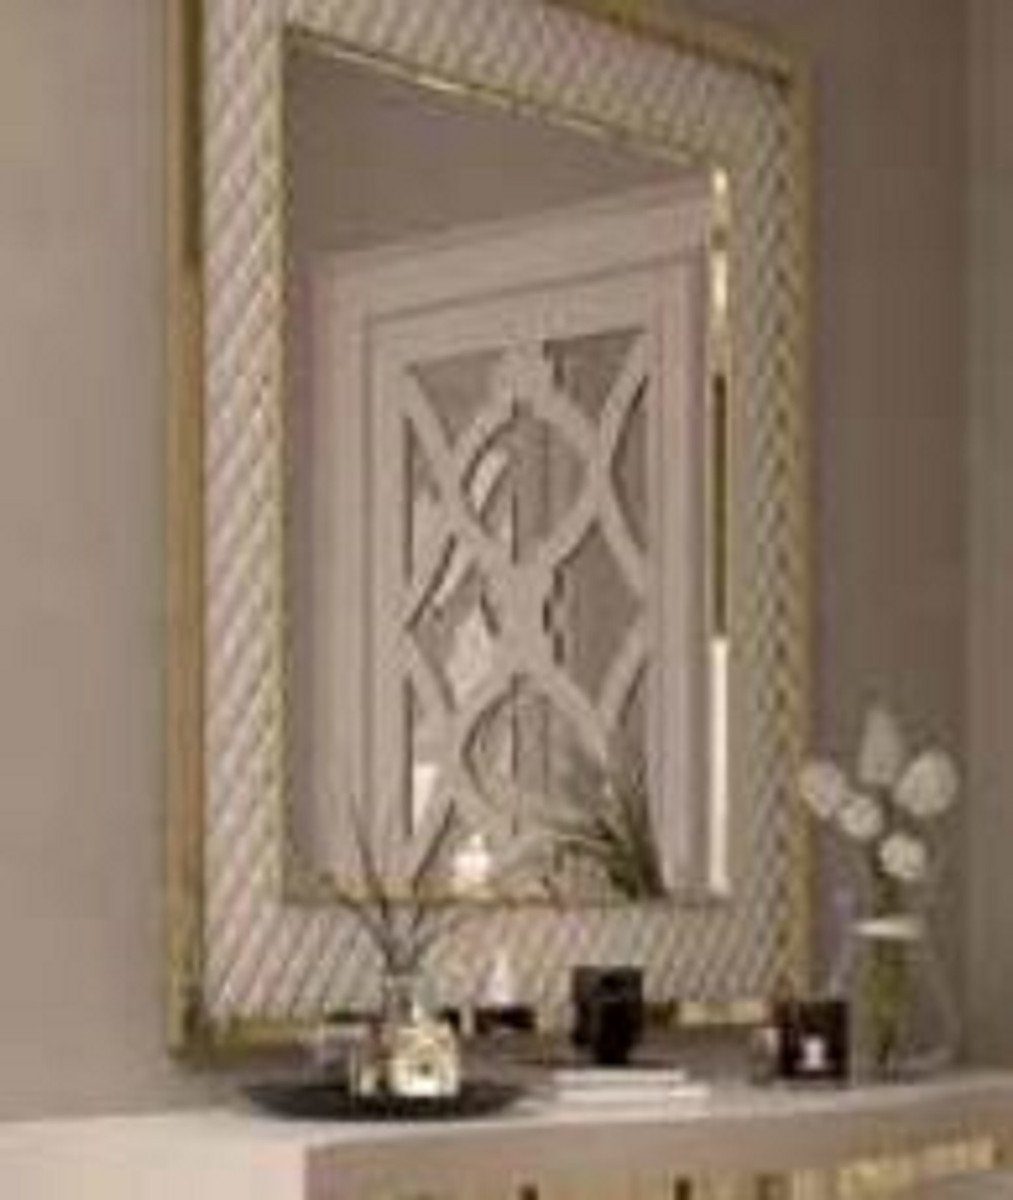 6 Spiegel Luxus Spiegel x H. Spiegel Moderner Weiß 126 / - cm - - Metallrahmen Wandspiegel x Garderoben Wohnzimmer Kollektion Wandspiegel mit Casa Schlafzimmer Padrino 88 Gold Luxus -